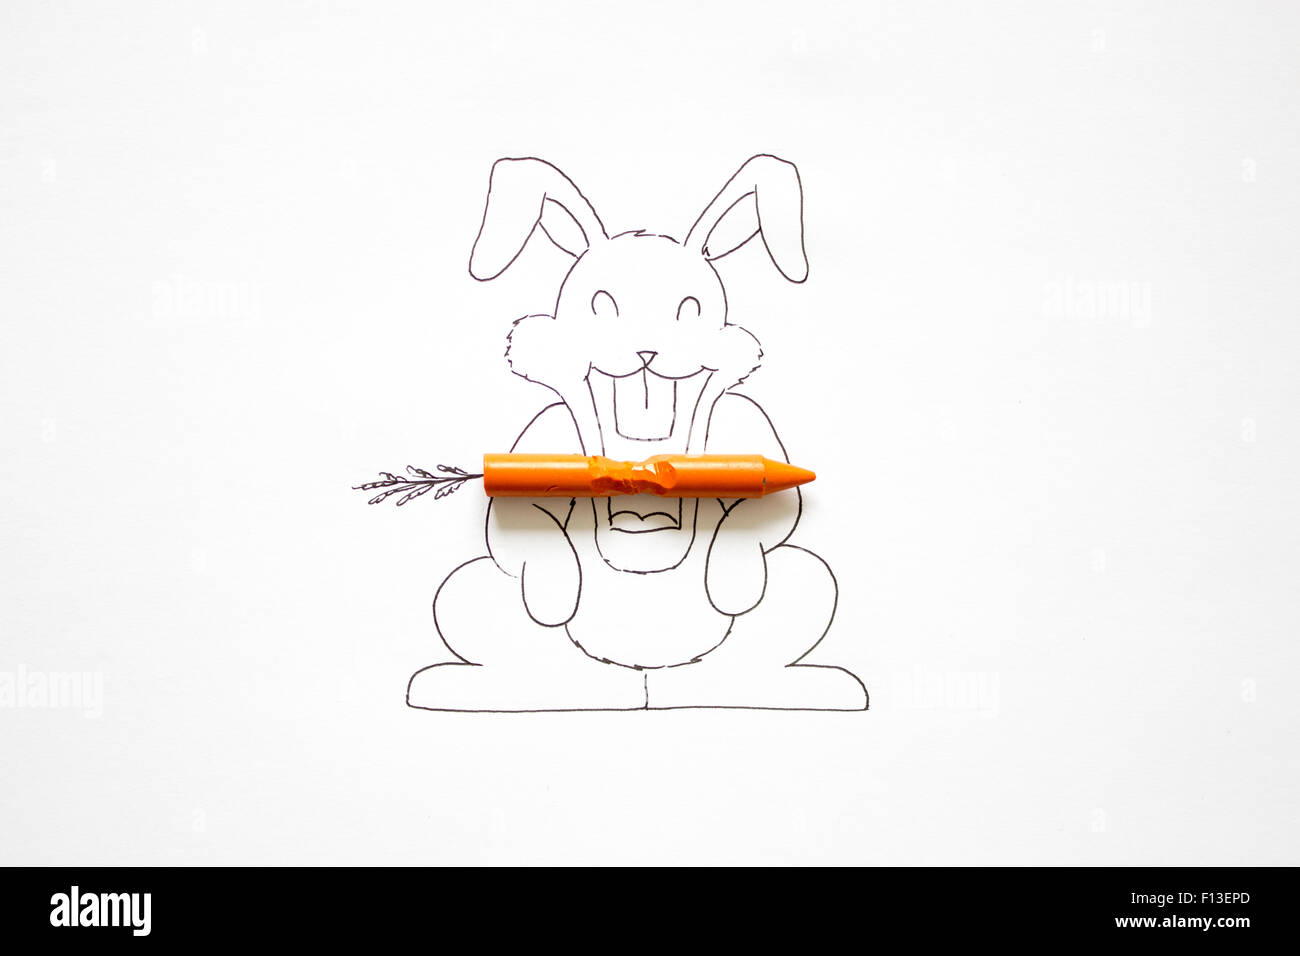 Dibujo conceptual de un conejito comiendo una zanahoria Foto de stock